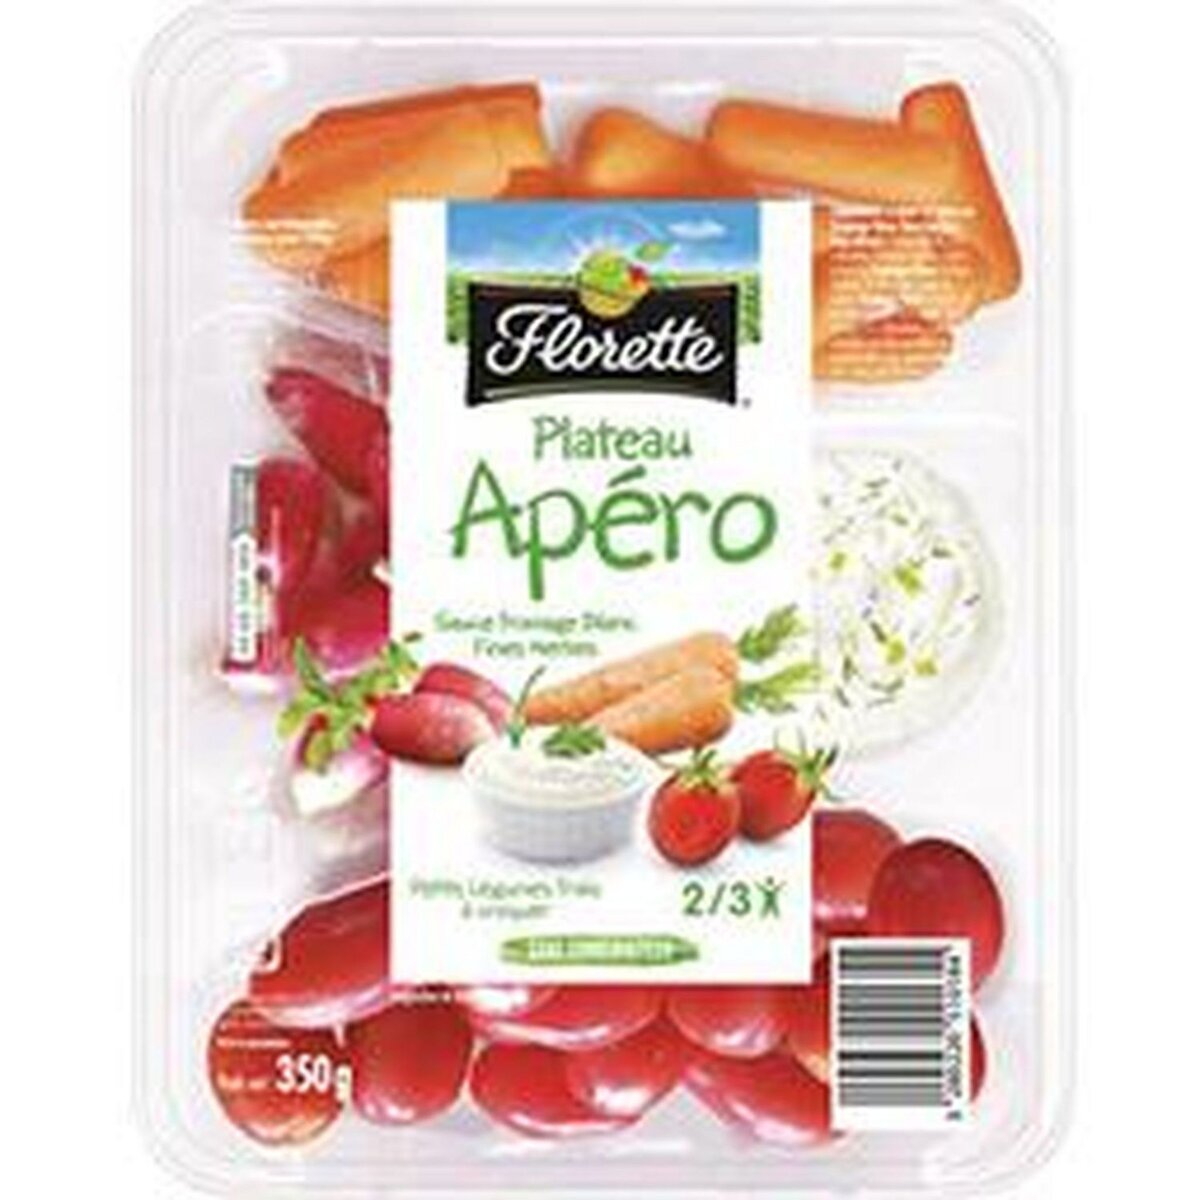 FLORETTE Plateau Apéro Petits légumes frais à croquer avec sauce au fromage blanc 350g